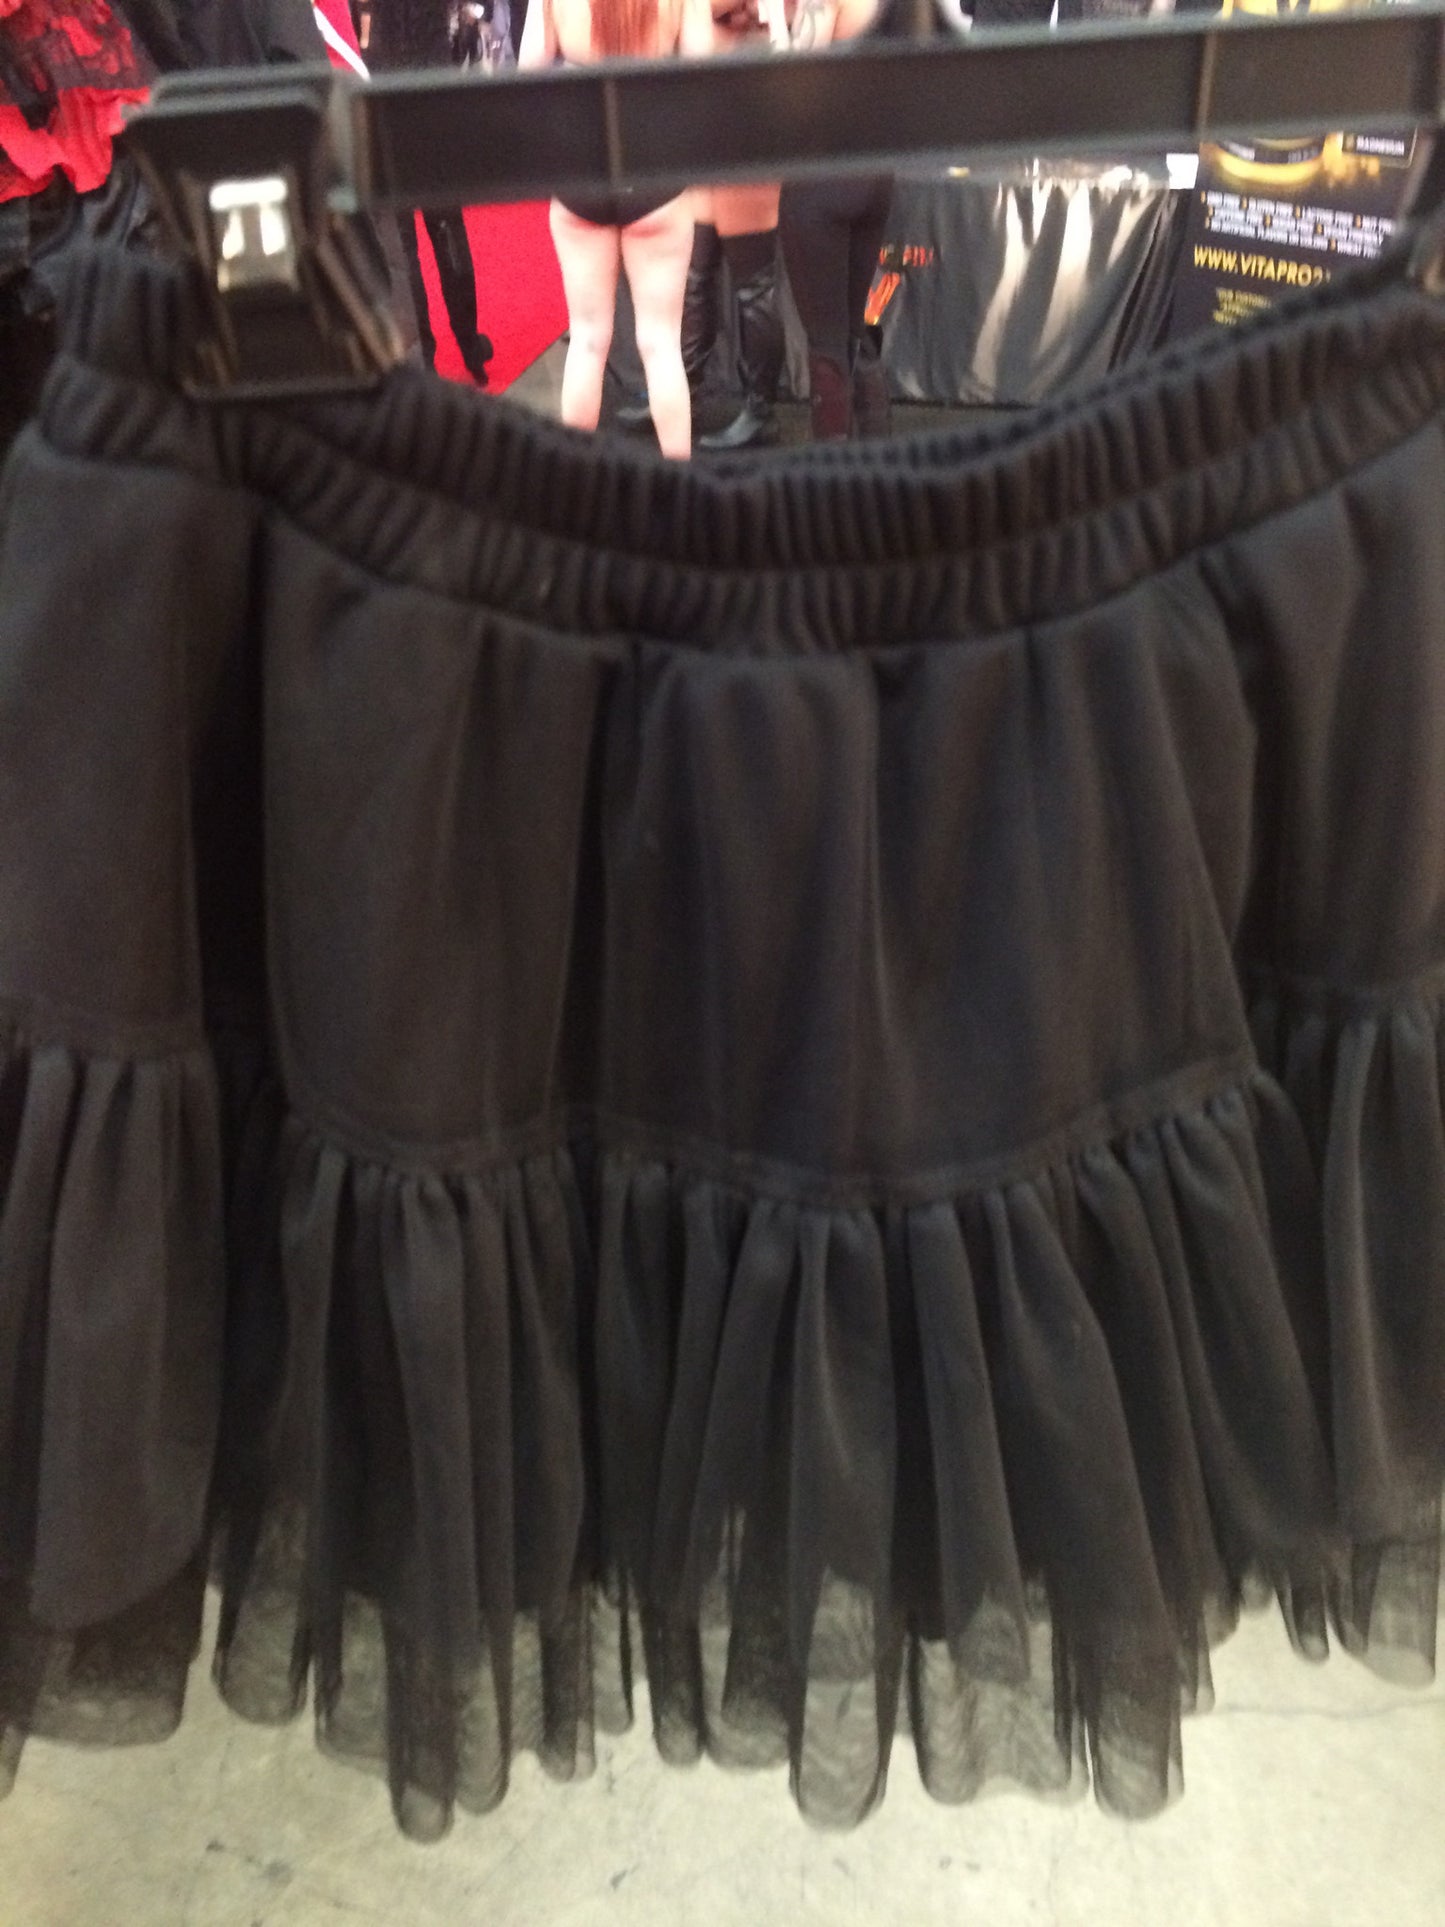 Plain black skirt